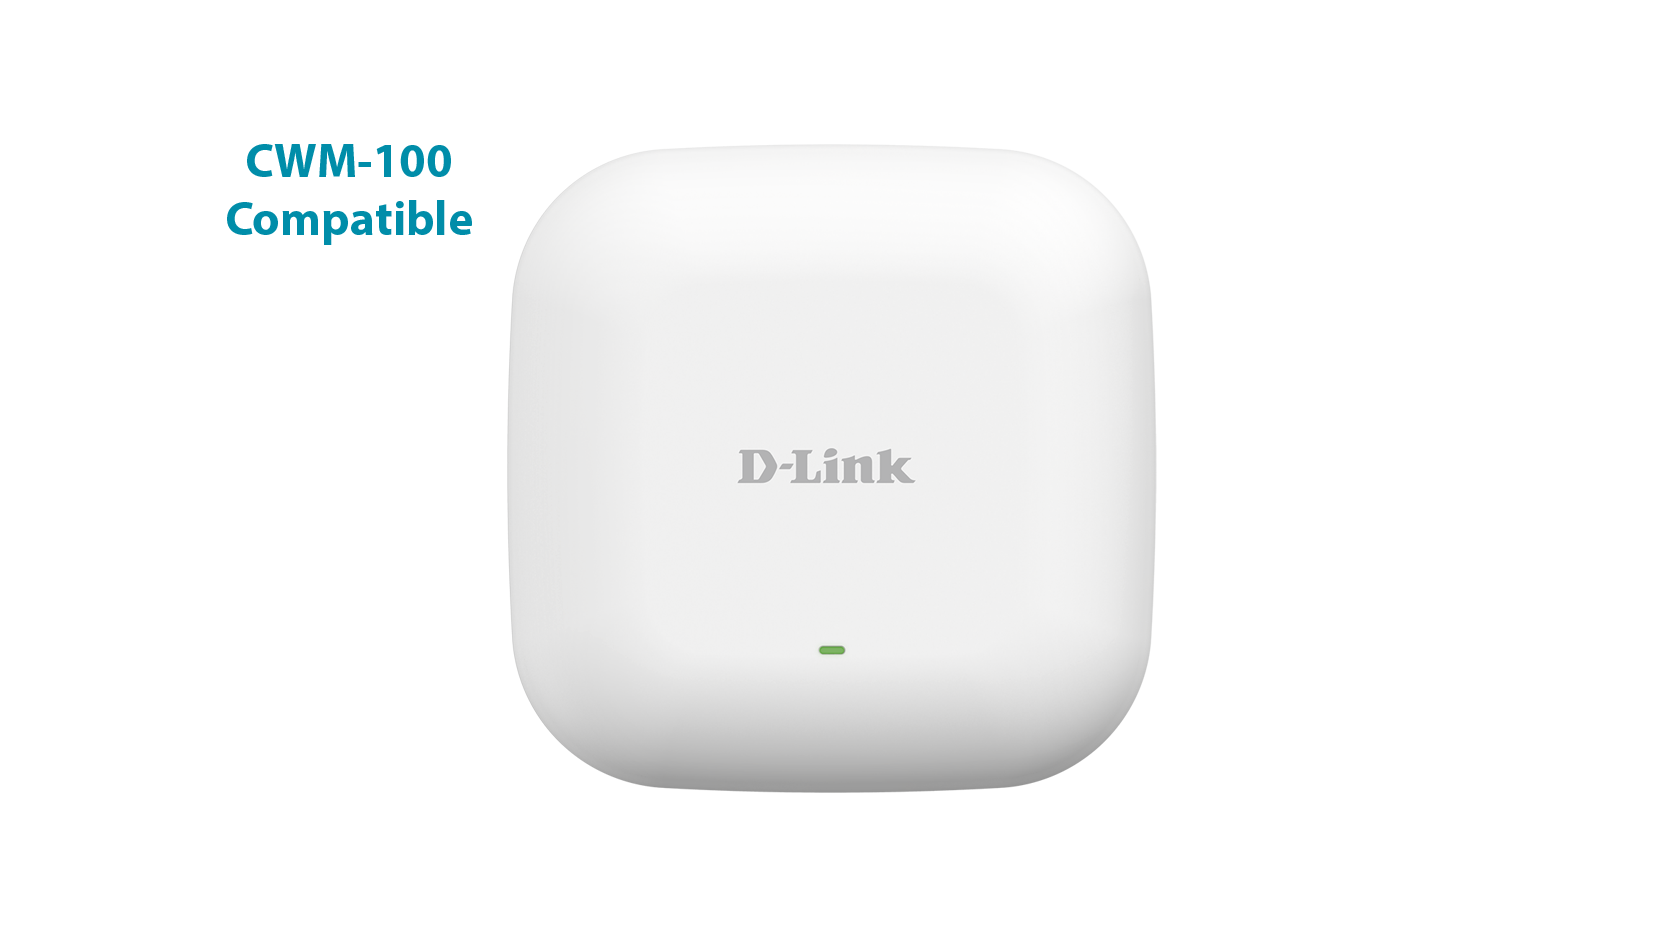 D-Link DAP-2230 Managed Wireless Access Point